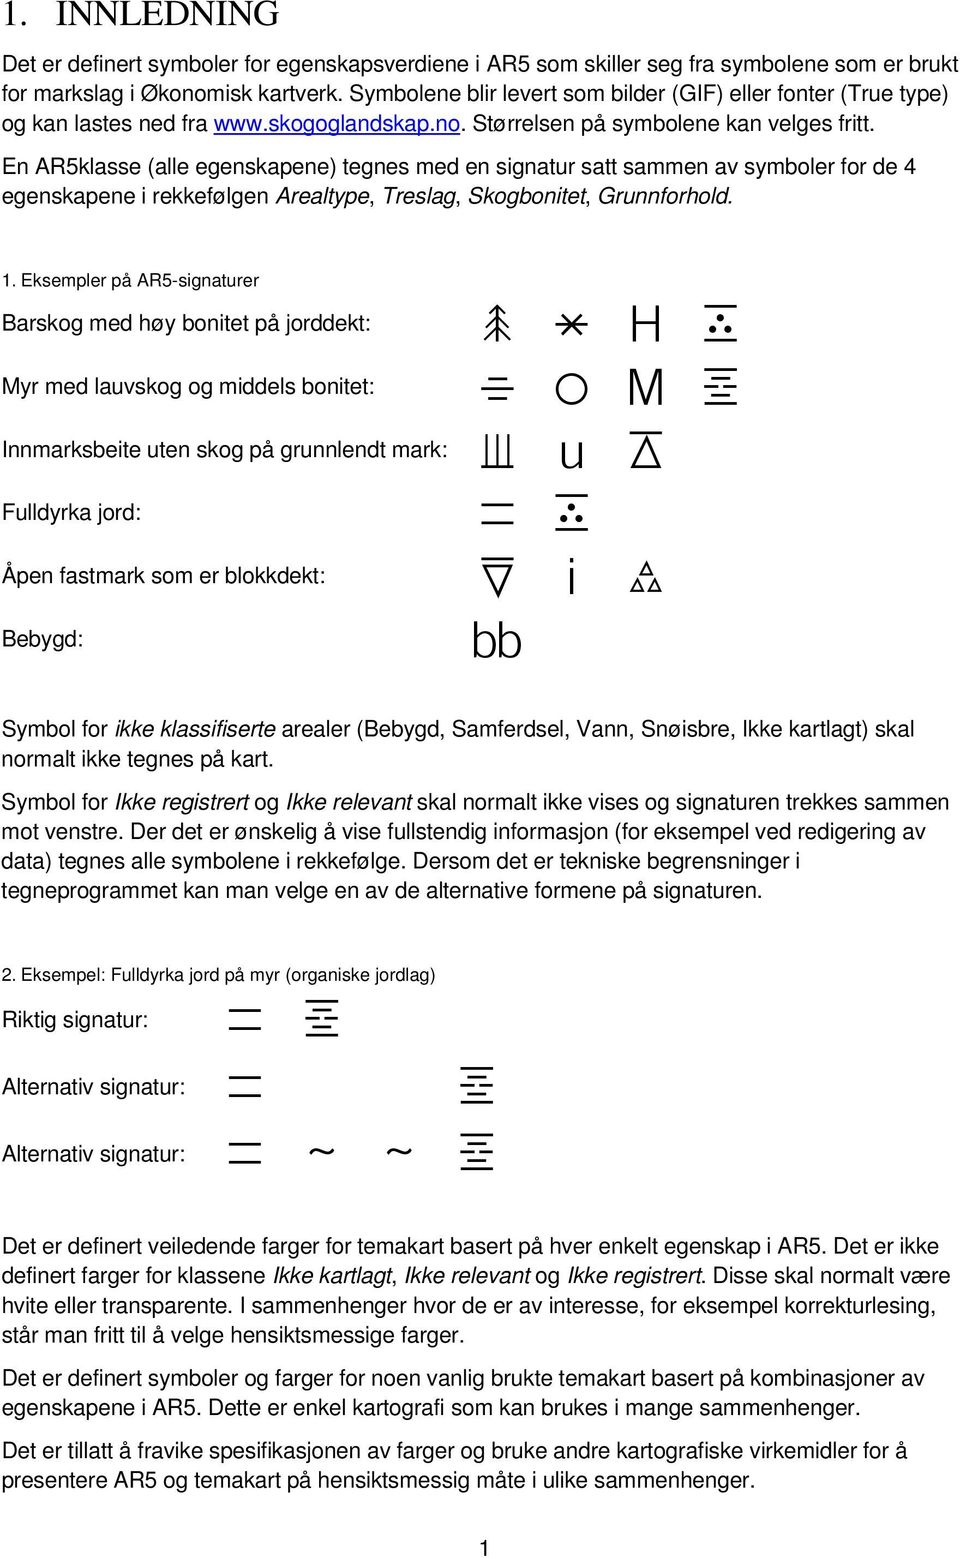 En AR5klasse (alle egenskapene) tegnes med en signatur satt sammen av symboler for de 4 egenskapene i rekkefølgen Arealtype, Treslag, Skogbonitet, Grunnforhold. 1.